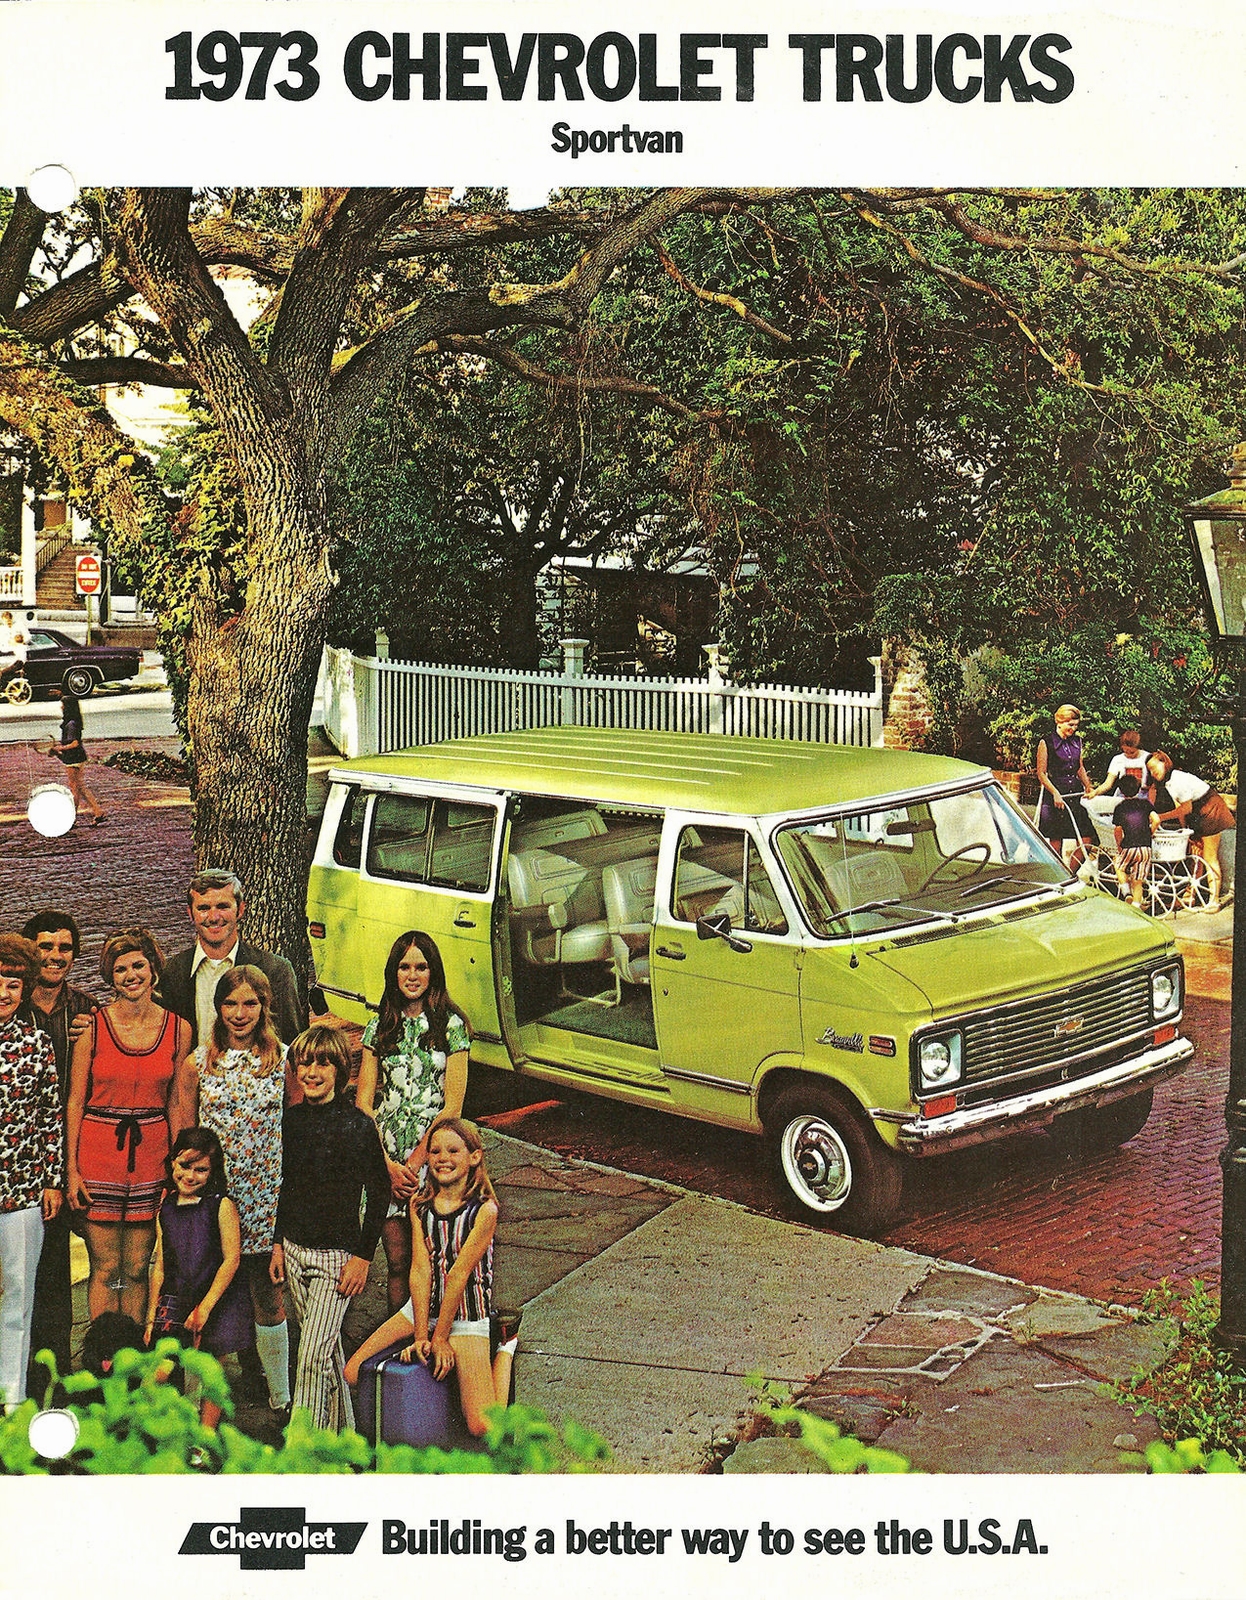 n_1973 Chevrolet Sportvan-01.jpg